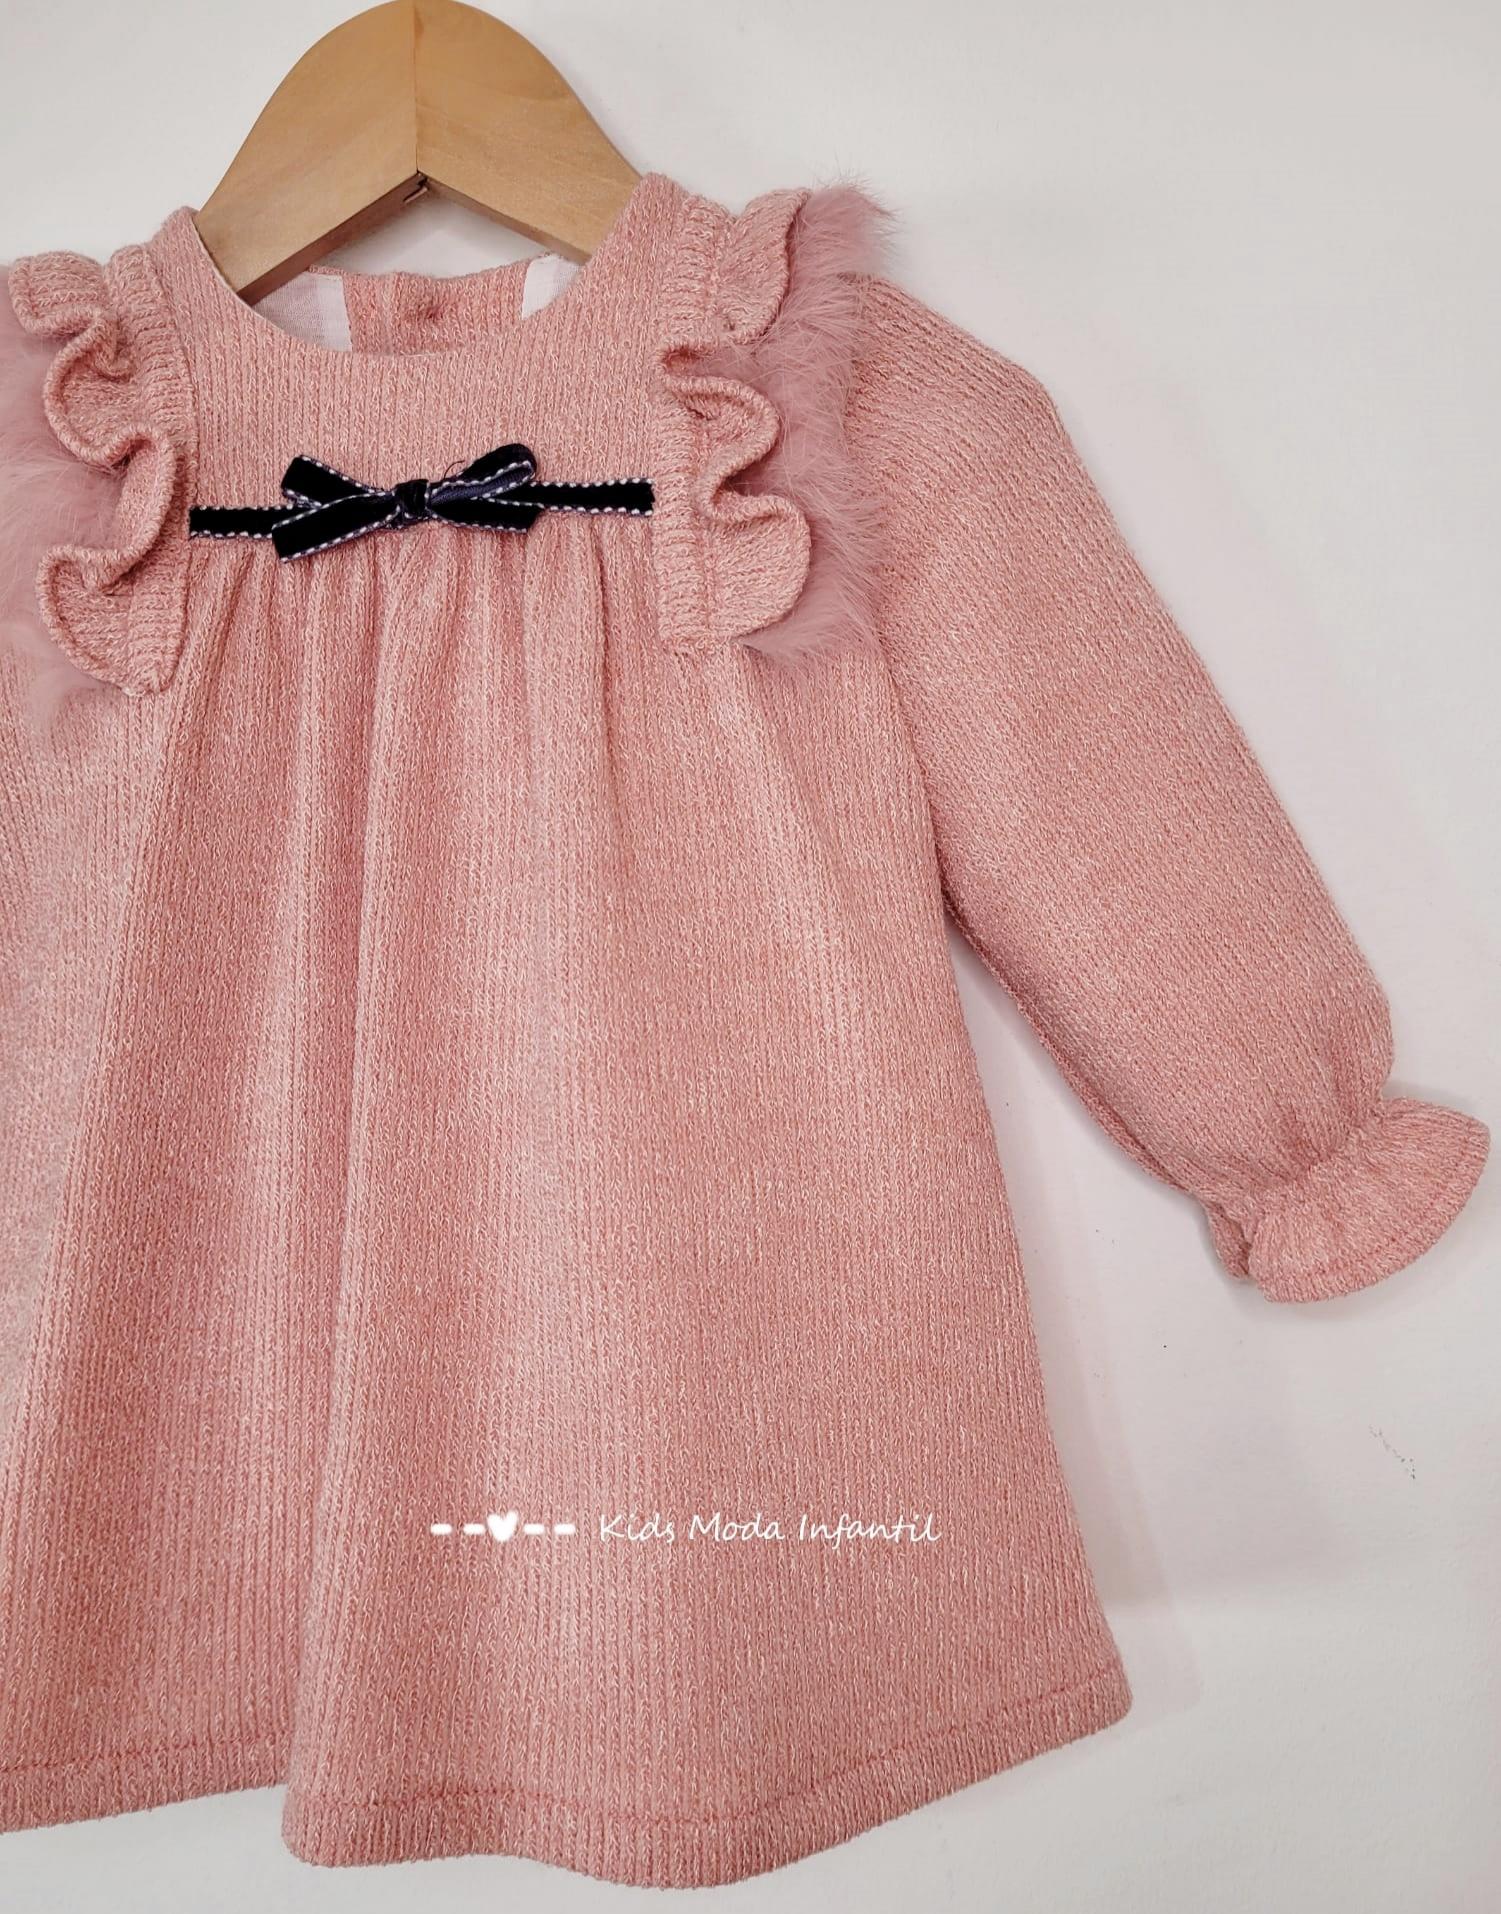 Itaca preparar Rectángulo Cuka Moda Infantil Vestido bebe punto rosa empolvado de Cuka Moda Infantil